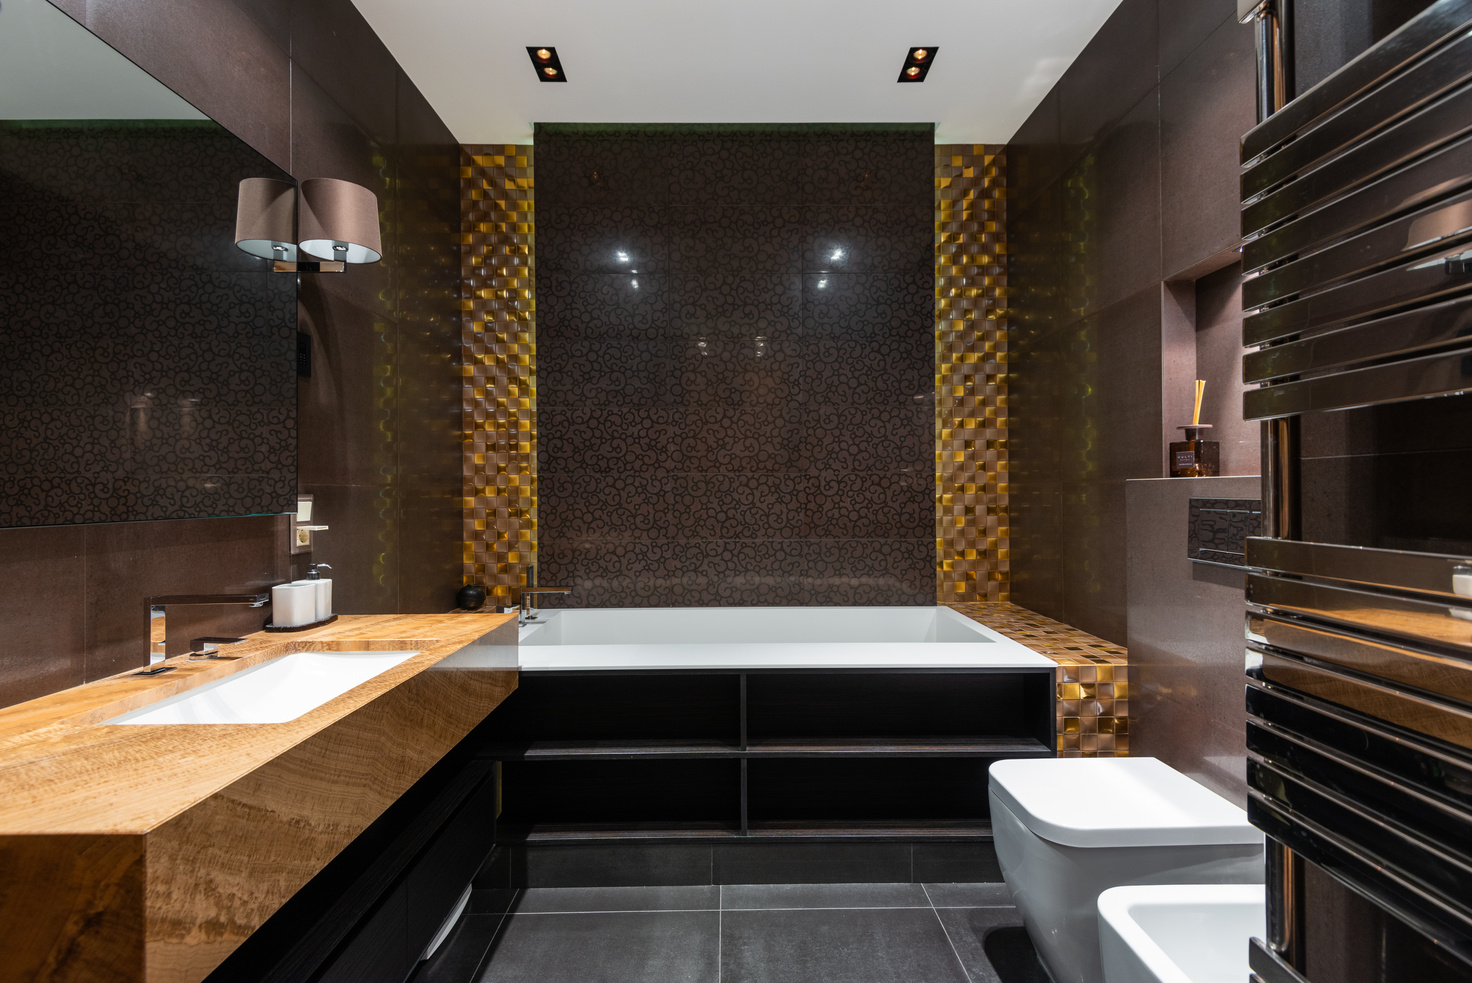 Interior of contemporary bathroom in luxury apartment